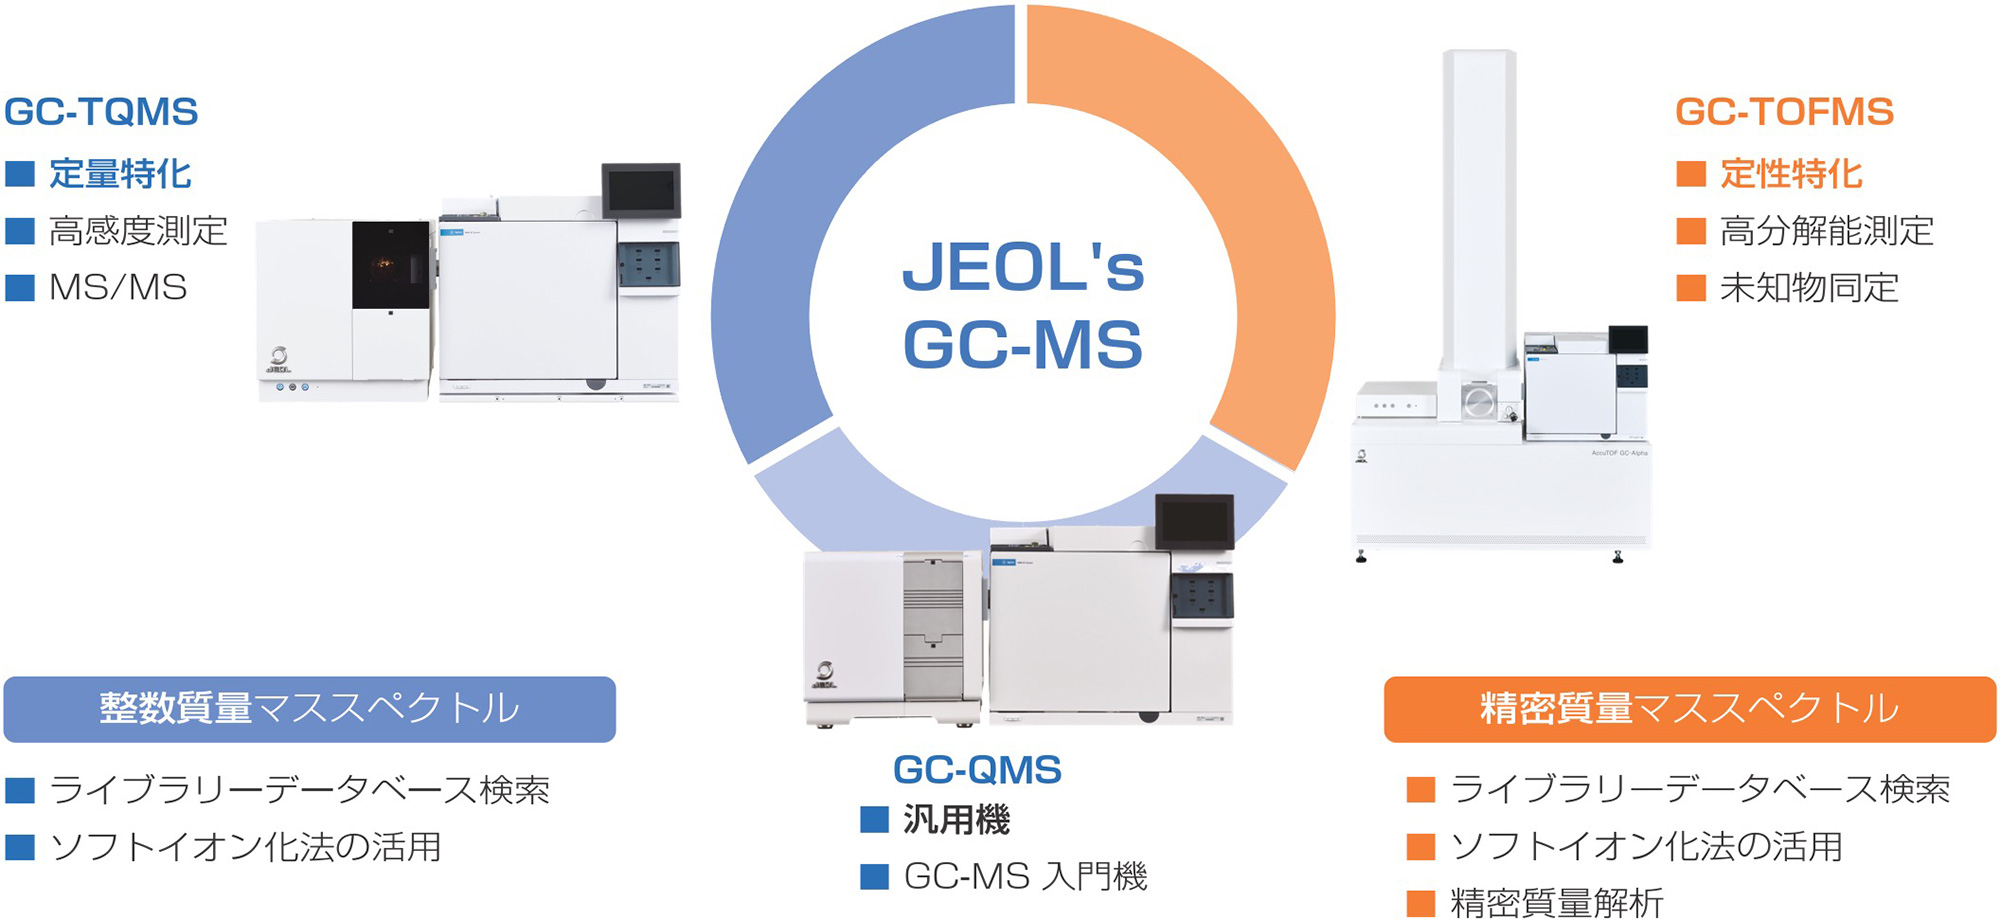 JEOL's GC-MS